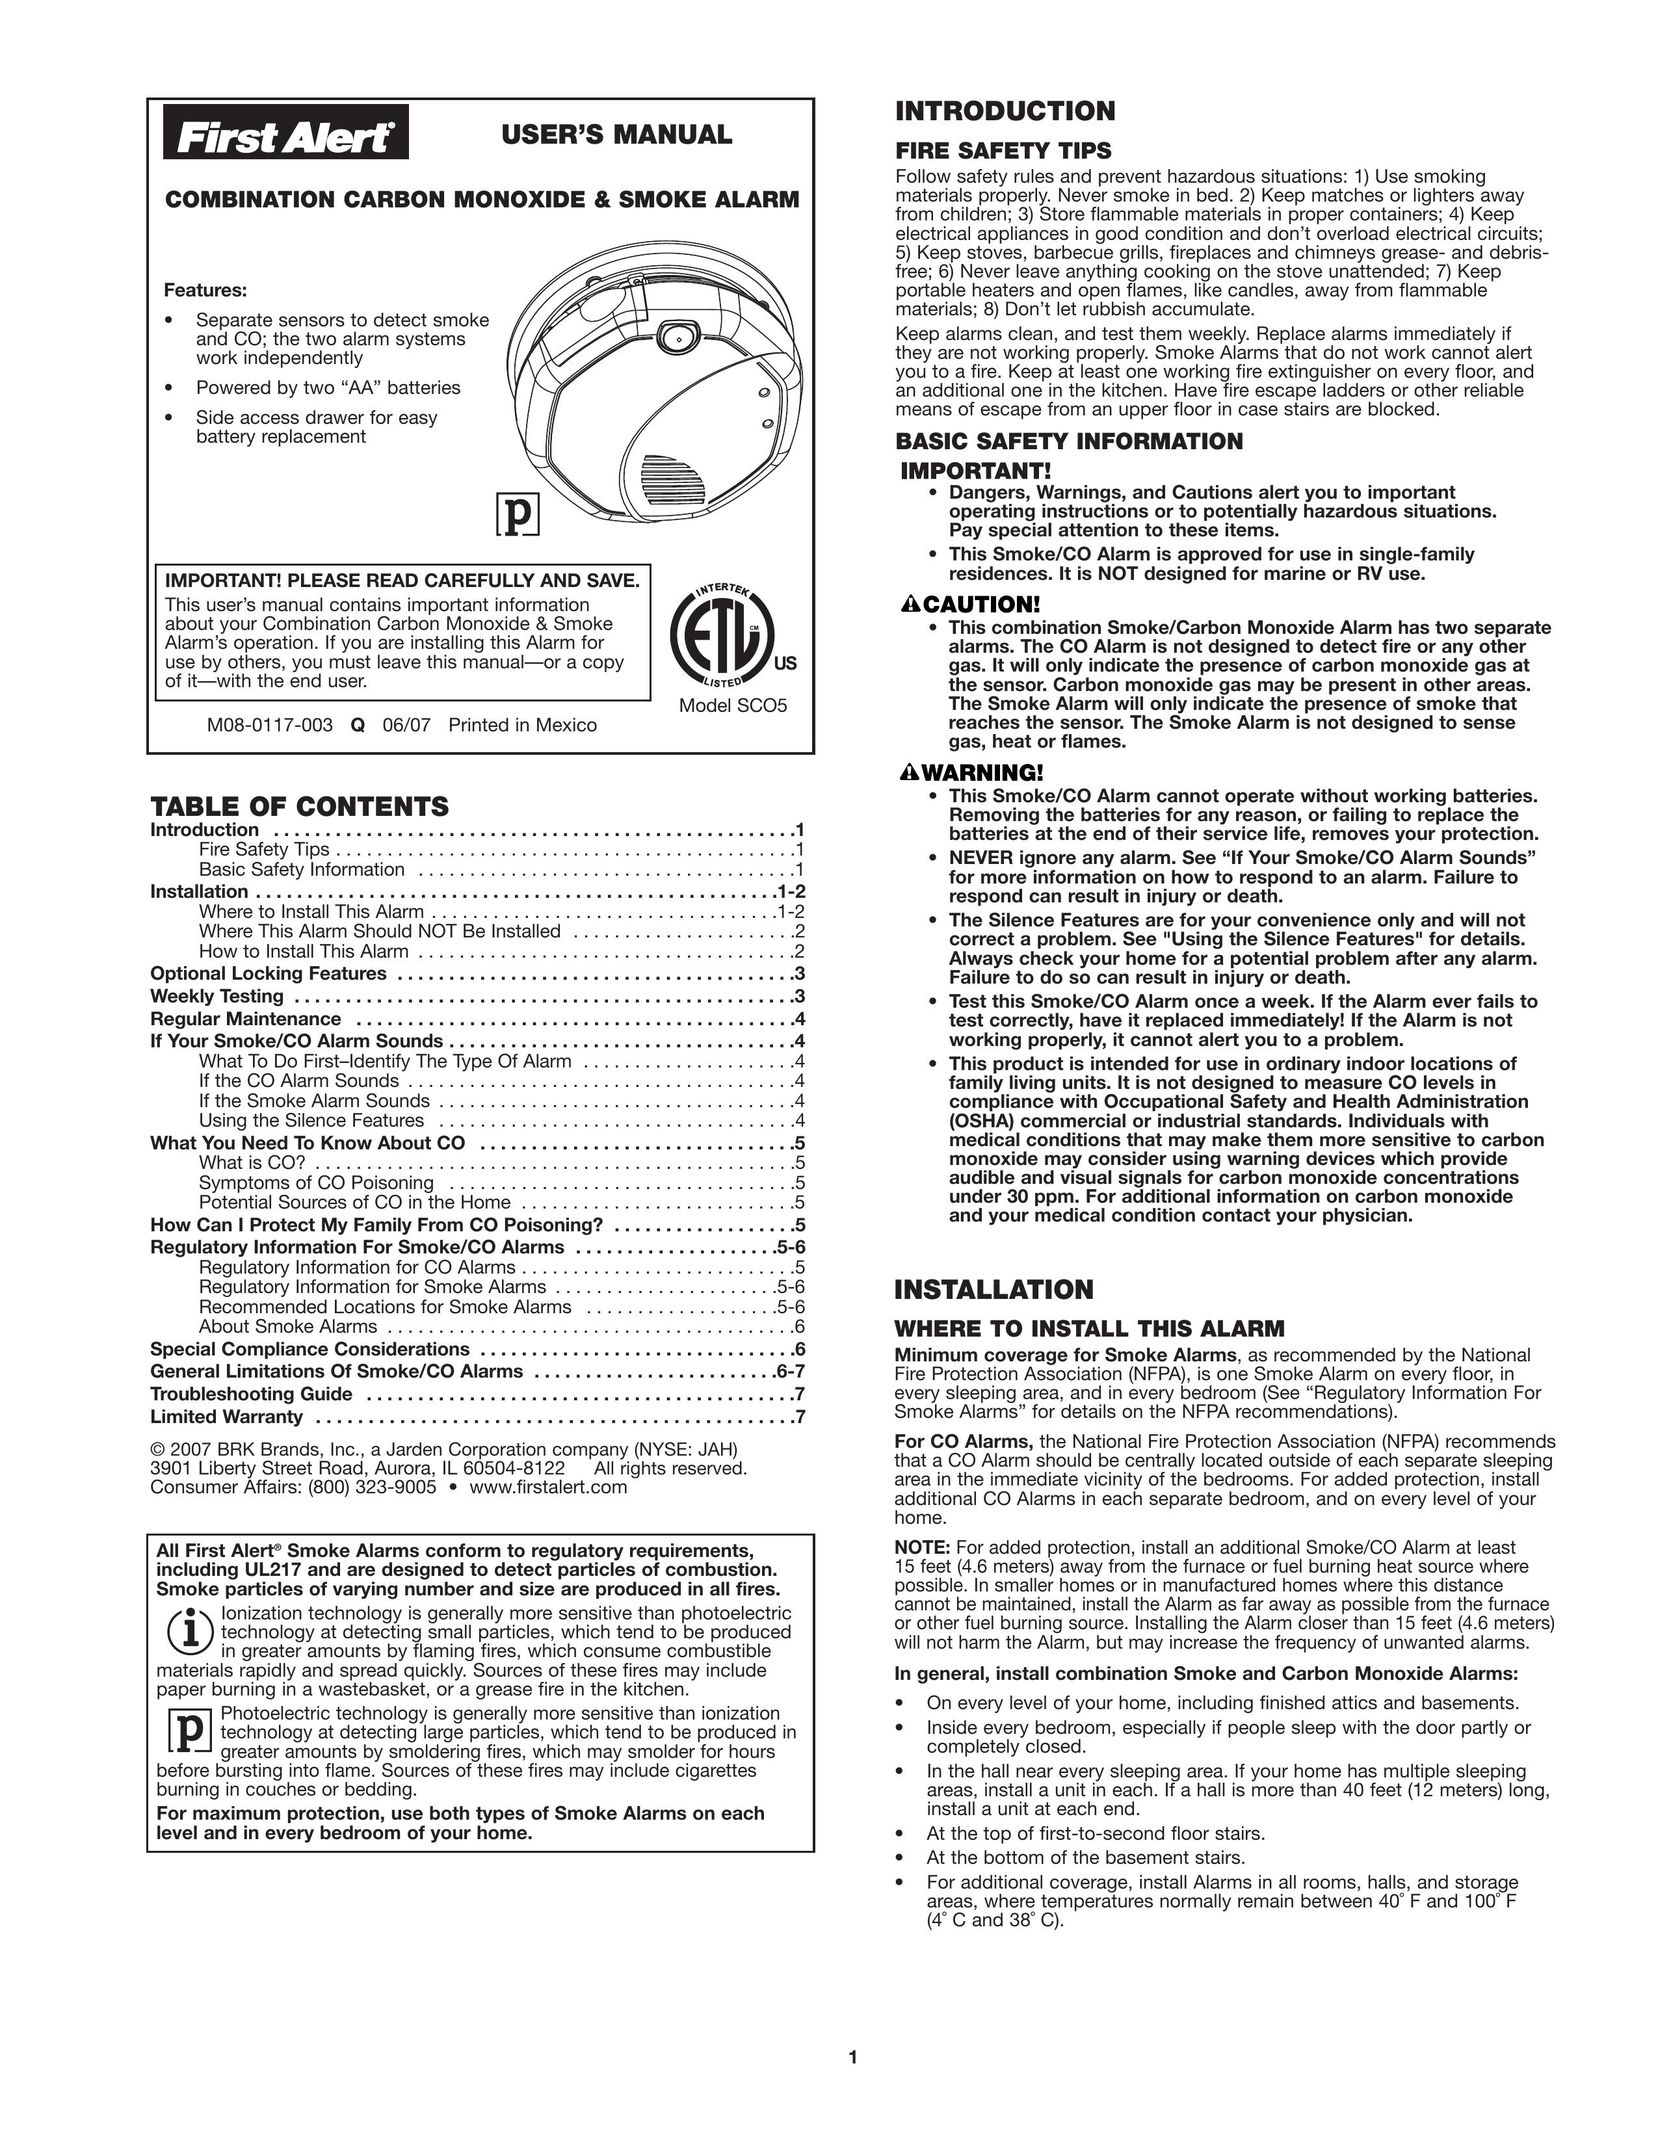 First Alert SCO5 Smoke Alarm User Manual